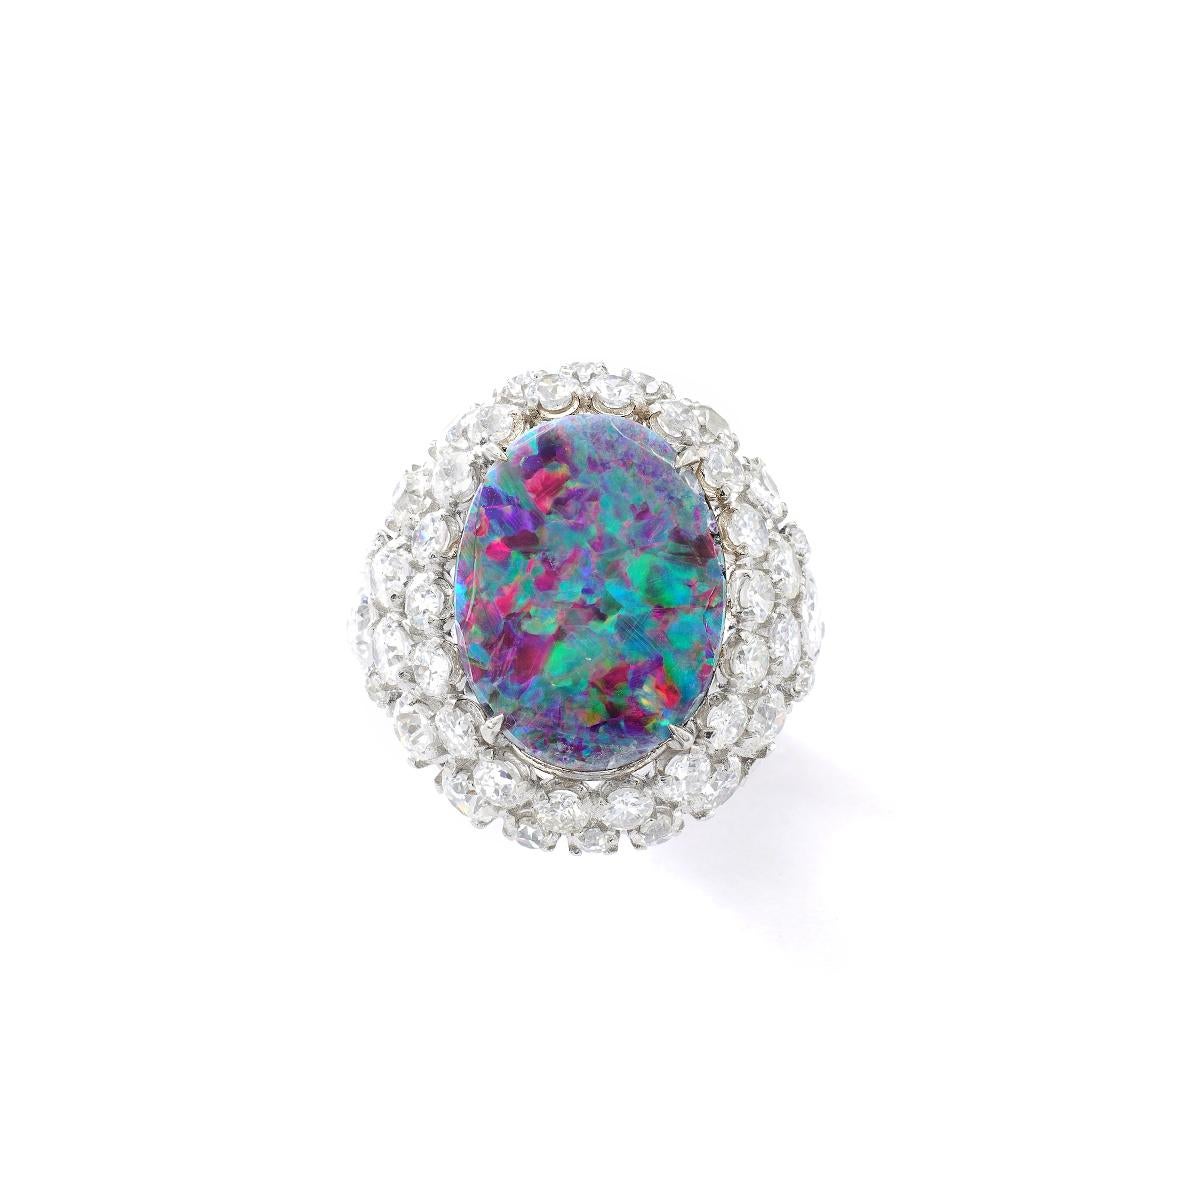 Doublet d'opale noire entouré de diamants sur une bague en platine.
Taille : 17,00 x 13,00 millimètres.

Poids total des diamants : environ 4,80-5,00 carats.
Couleur estimée H, clarté Vs.